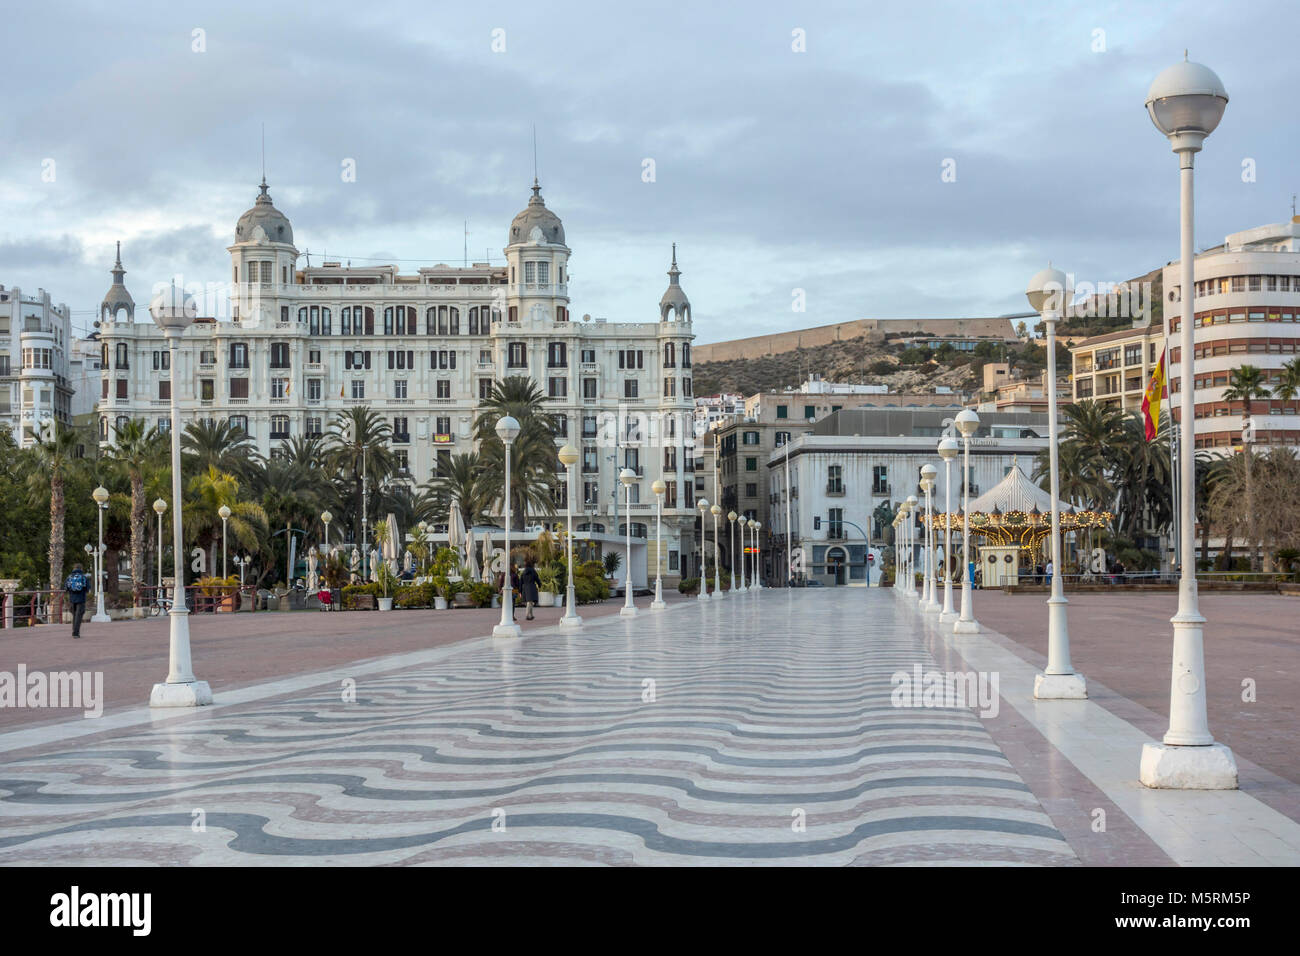 Iconic City Point in der Nähe von Hafen, Platz Puerta del Mar. Alicante, Spanien. Stockfoto